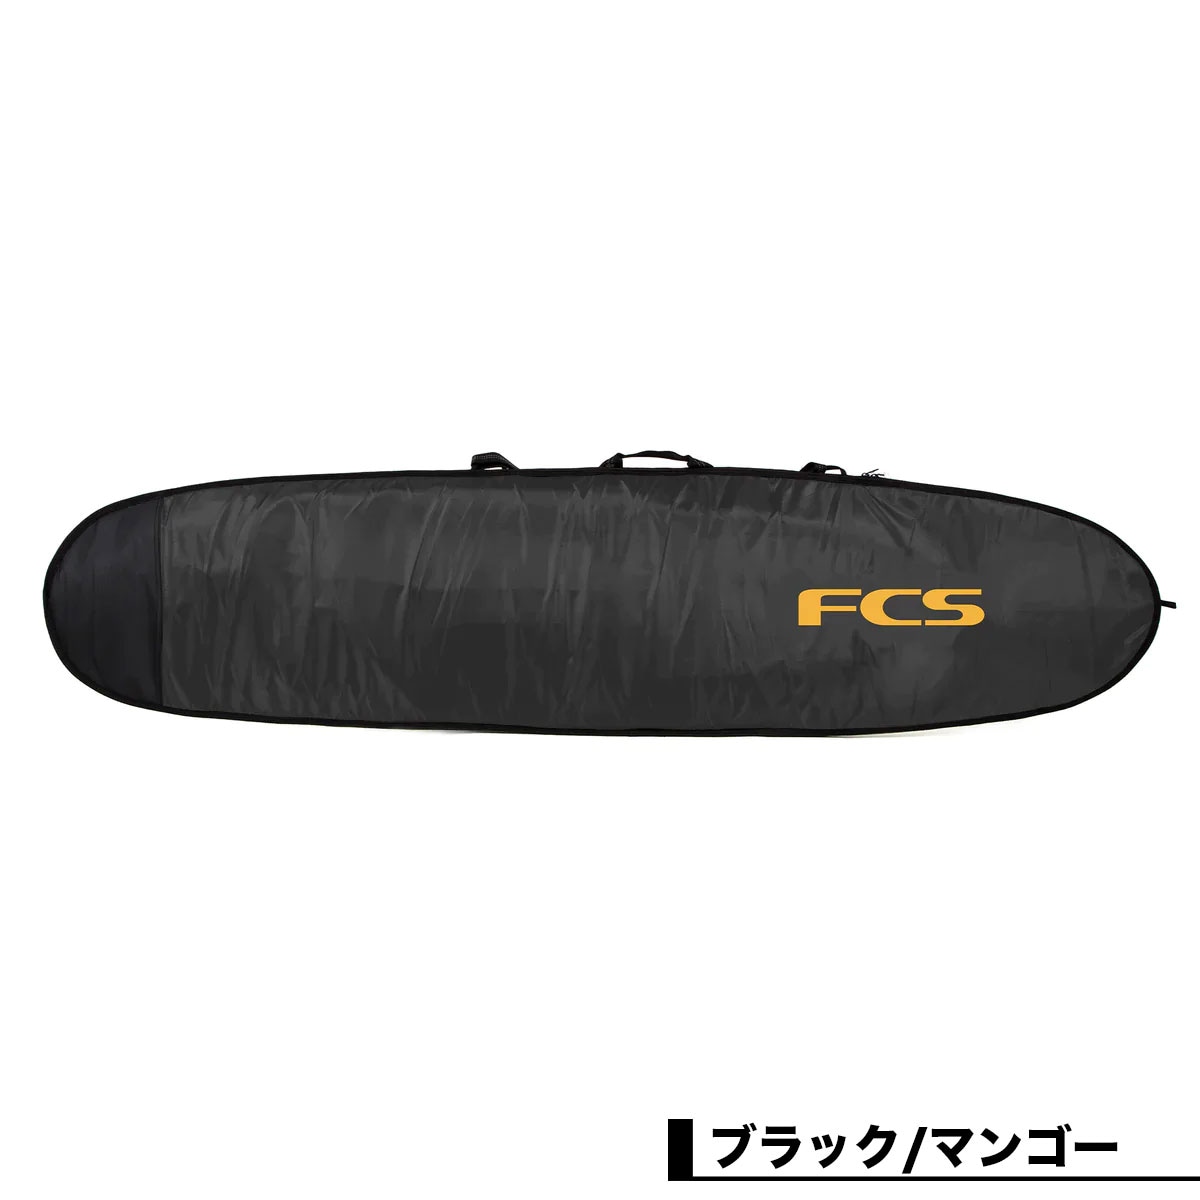 FCS エフシーエス サーフィン ハードケース ロングボードケース サイズ 9.2 トラベル ハードカバー トリップ ボードカバー 保護 耐久  耐焼【BCL-092-LB-BLM】-ジャックオーシャンスポーツ